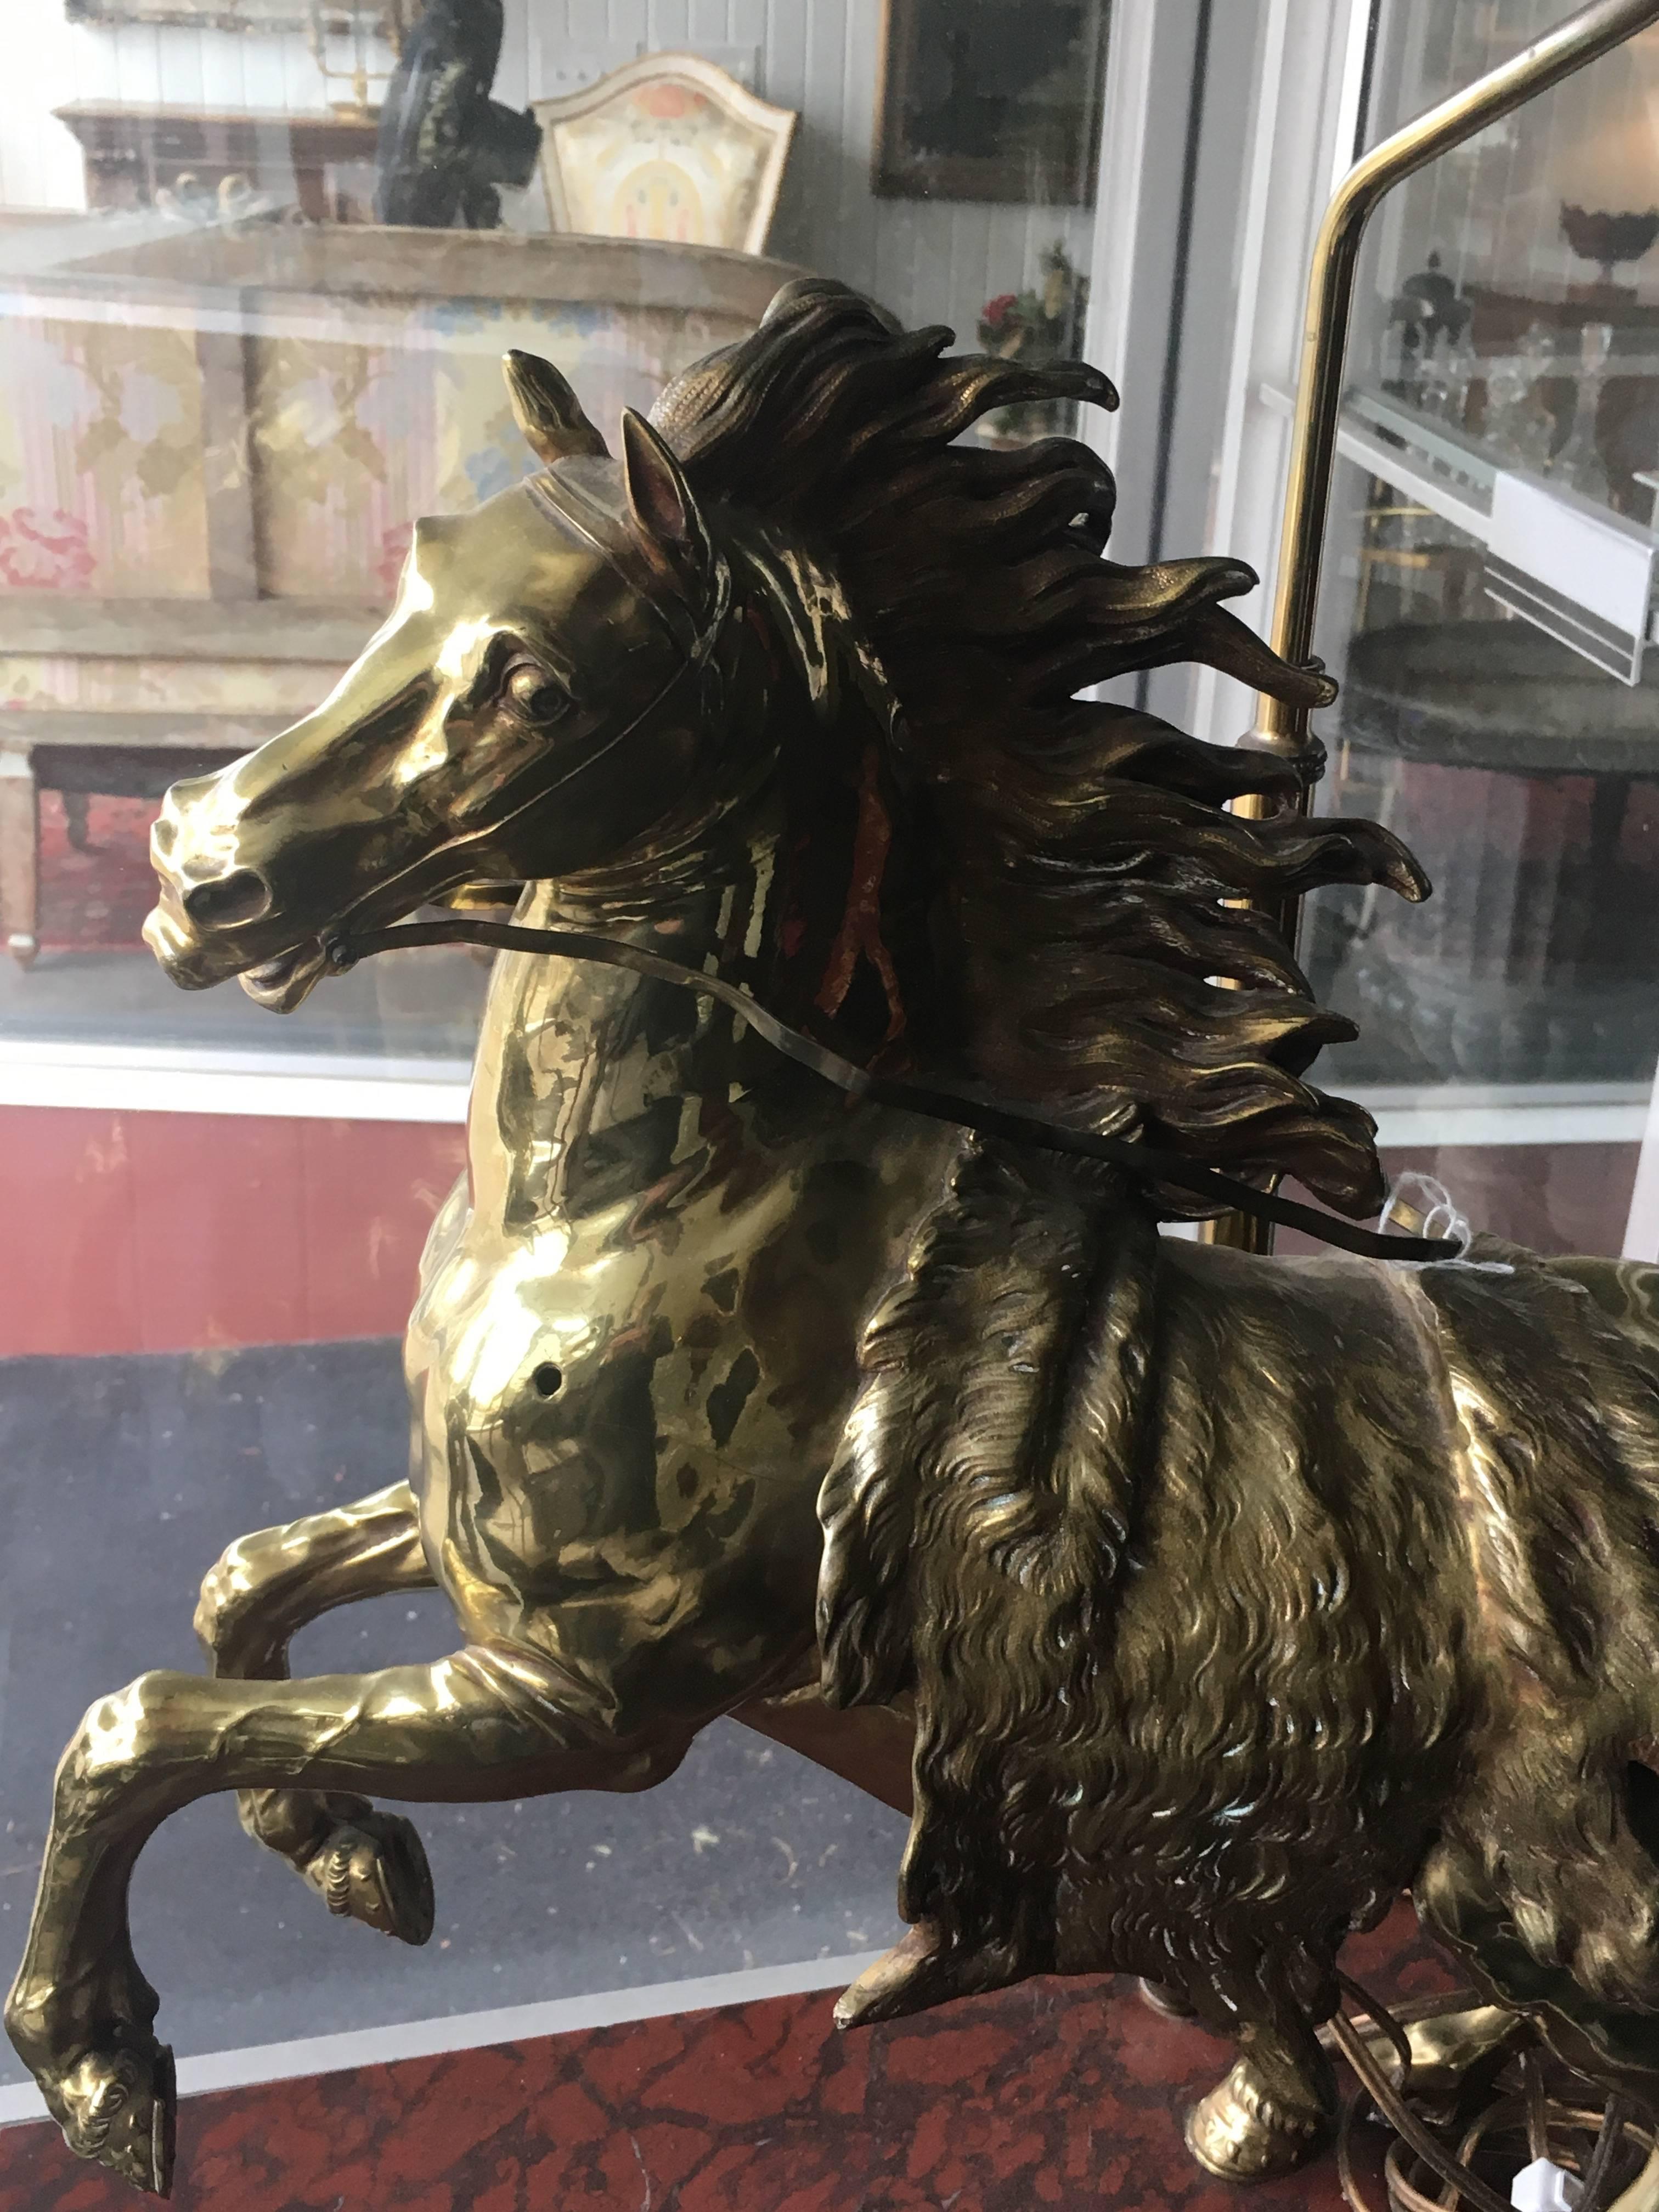 Une paire de chevaux en bronze doré
chacune en forme de cheval au galop, posée sur un socle rectangulaire en faux marbre aux angles arrondis et montée en lampe.
Mesures : Hauteur totale 28 pouces.